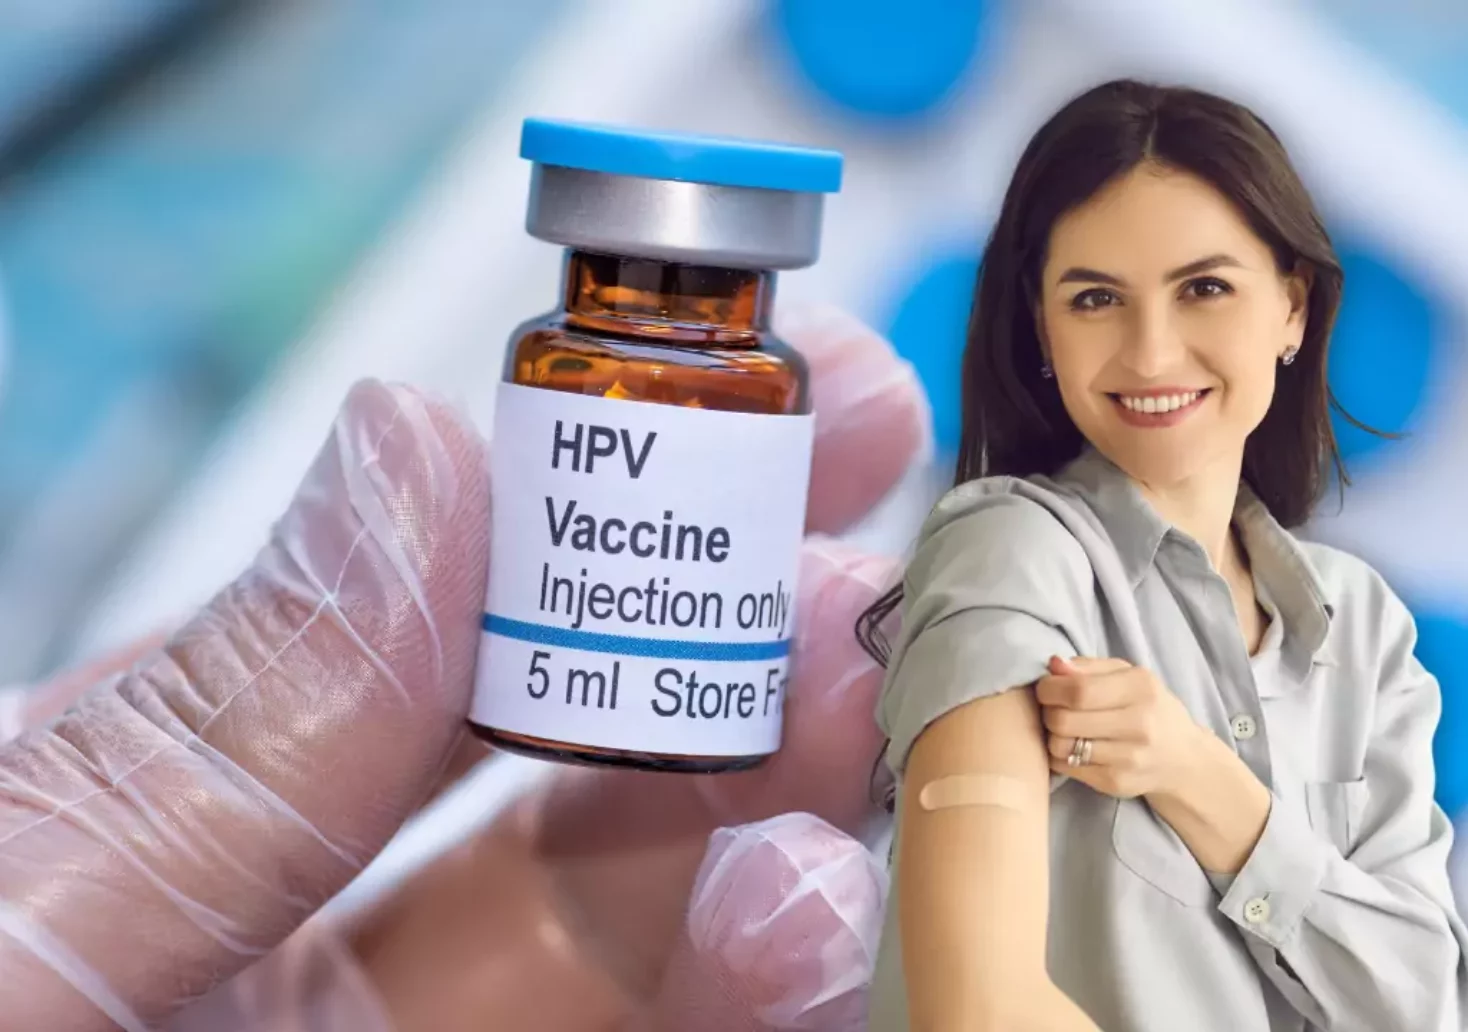 Bild auf 5min.at zeigt eine HPV-Impfung und eine Frau.